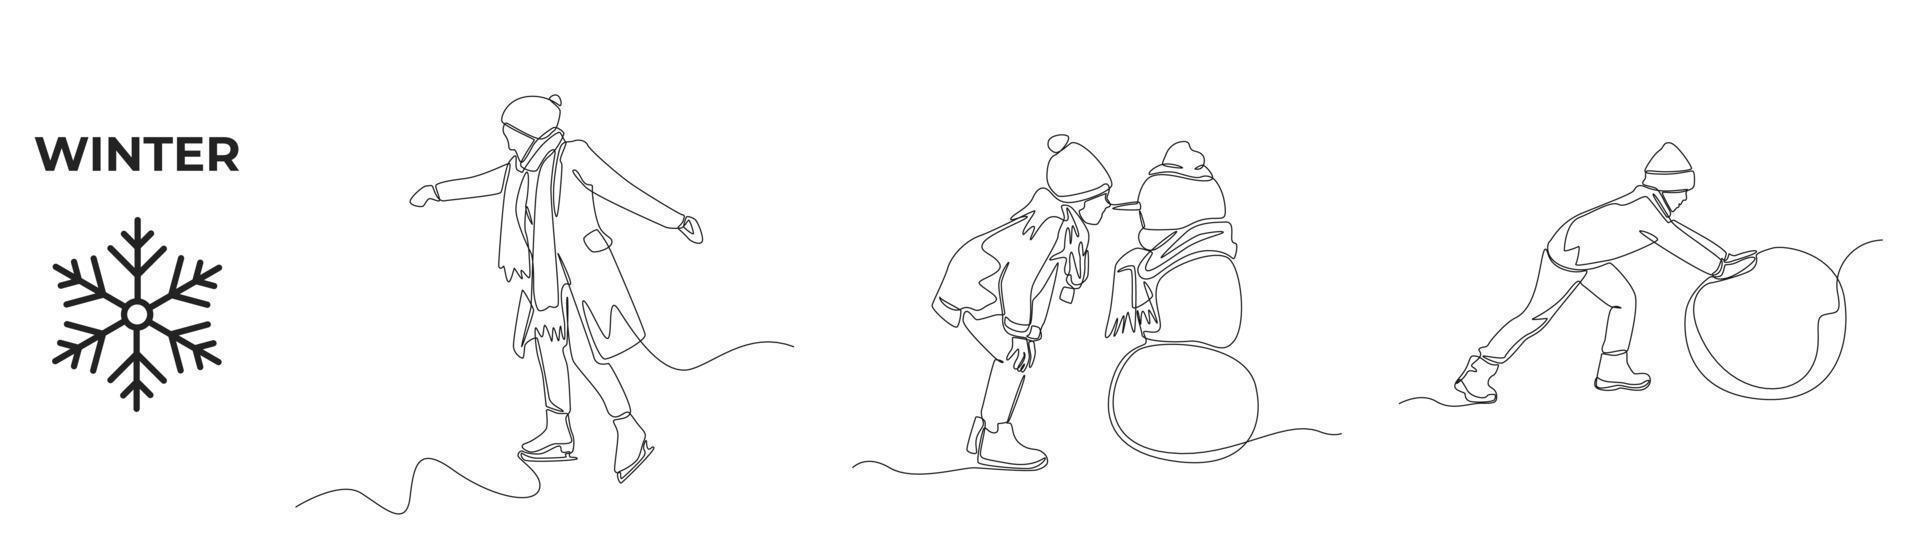 uma única linha desenhando atividades de inverno e conjunto esportivo. homem feliz com roupas de inverno, menino com boneco de neve e bola de neve rolando no inverno. linha contínua desenhar design gráfico ilustração vetorial. vetor